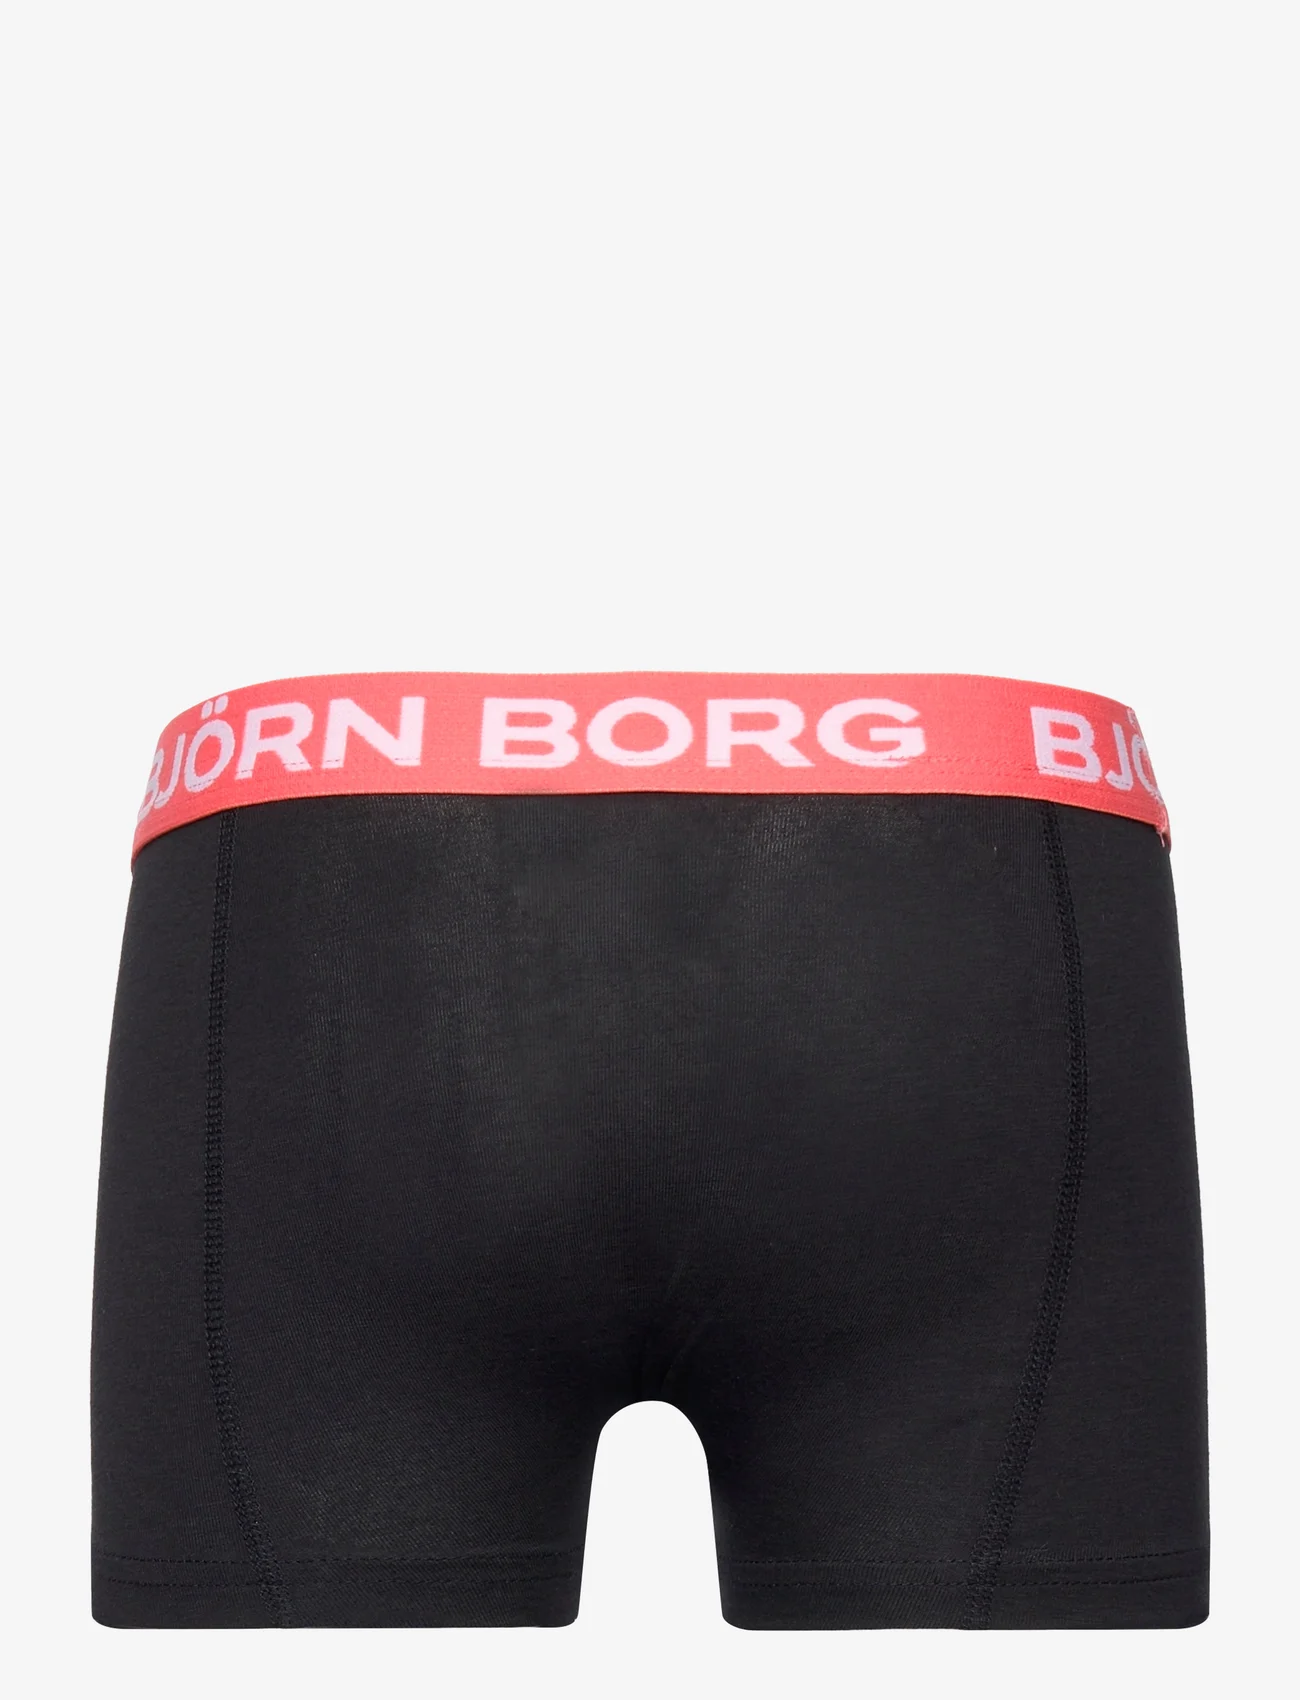 Björn Borg - CORE BOXER 3p - onderbroeken - multipack 6 - 1